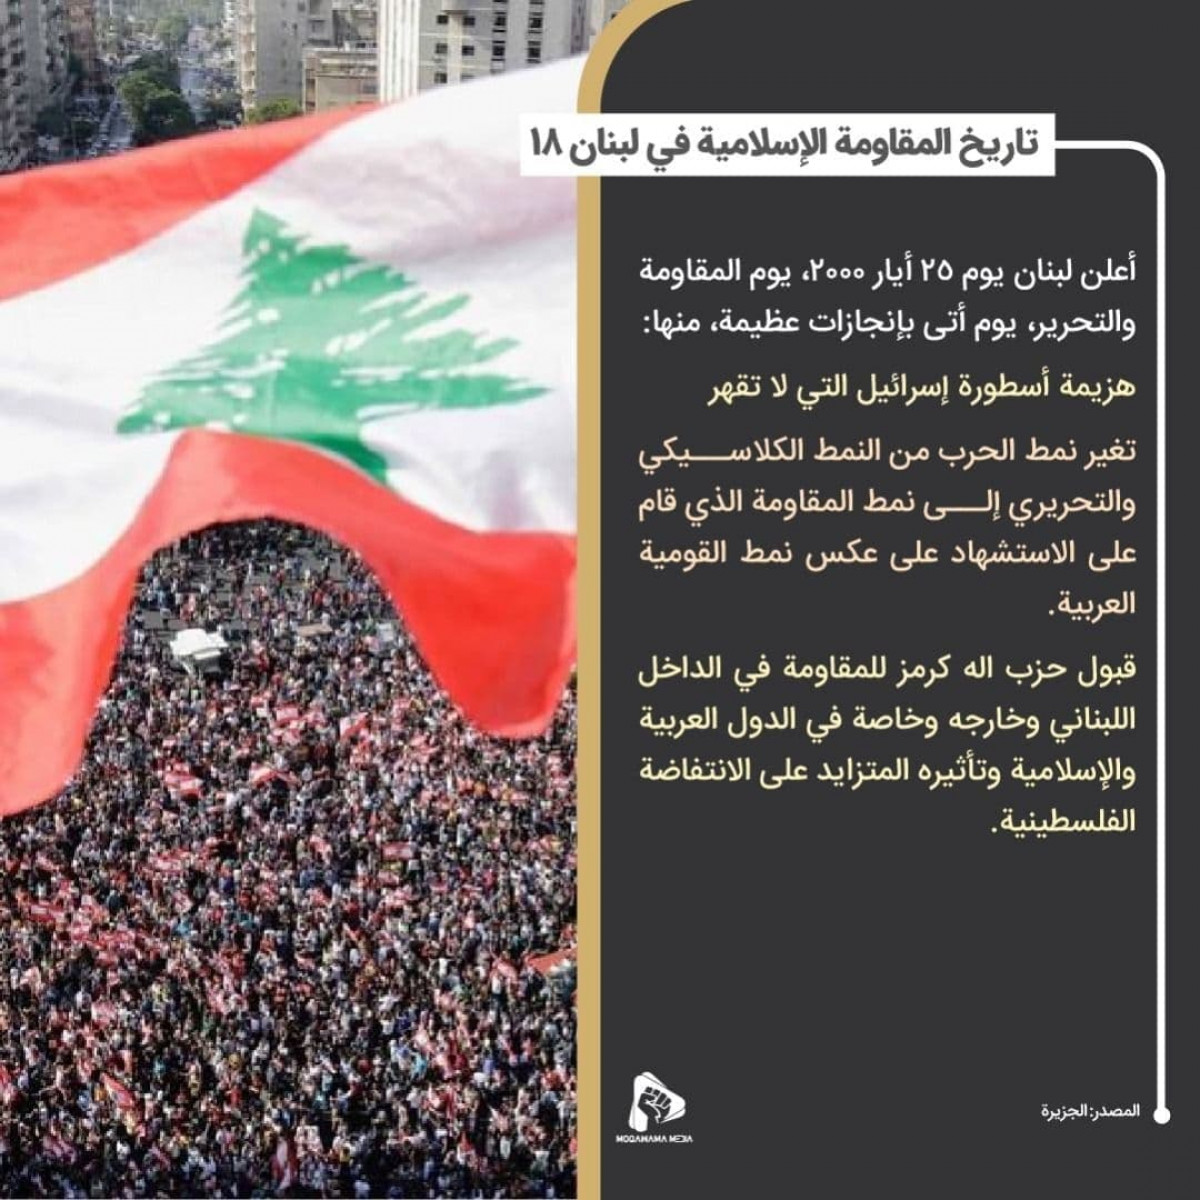 تاريخ المقاومة الإسلامية في لبنان 18